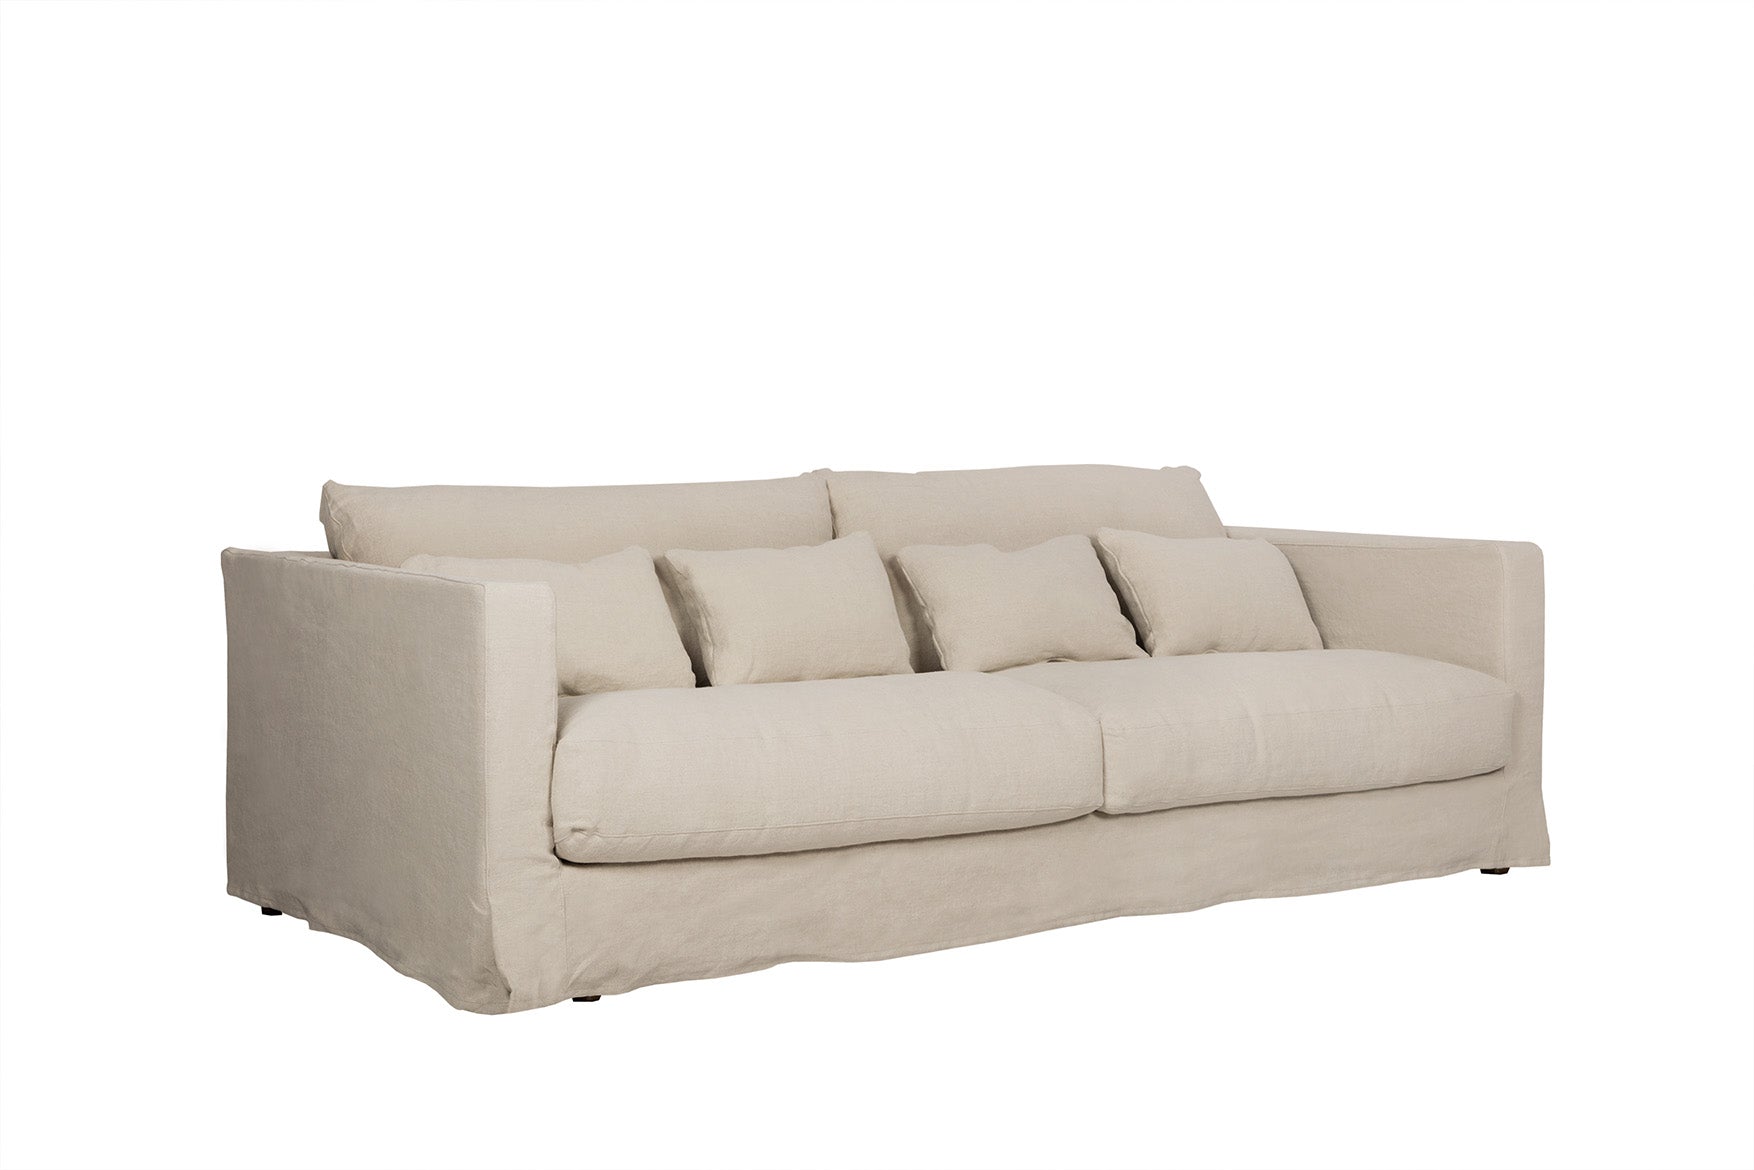 Mastrella Ilario 3 Seater Sofa